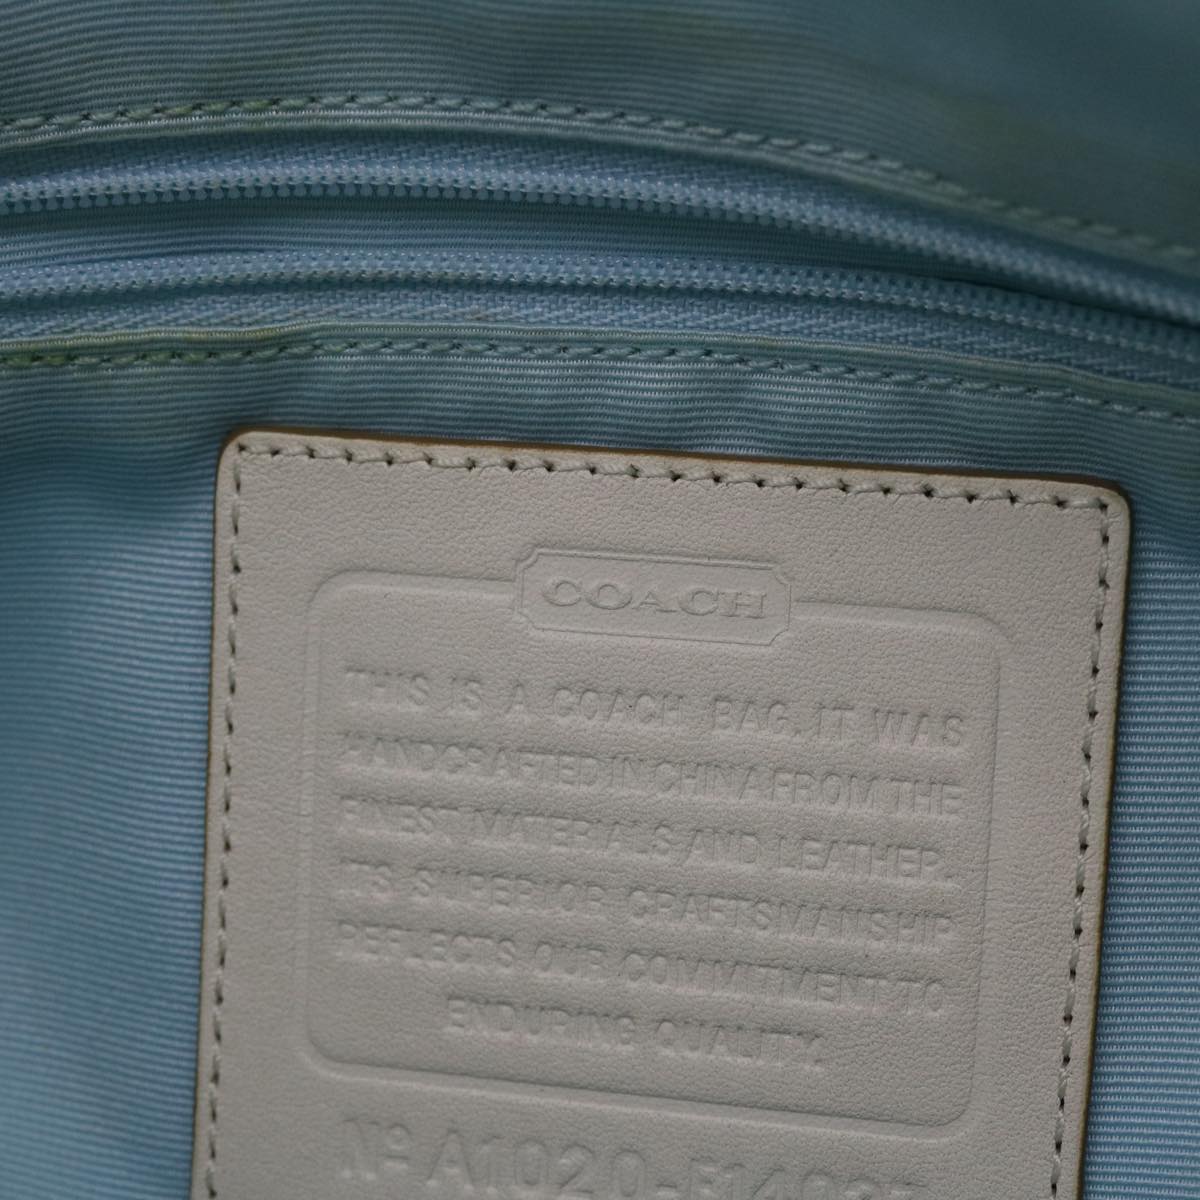 Coach Horse & Carriage Shoulder Bag Canvas Leather Light Blue White Auth am4218